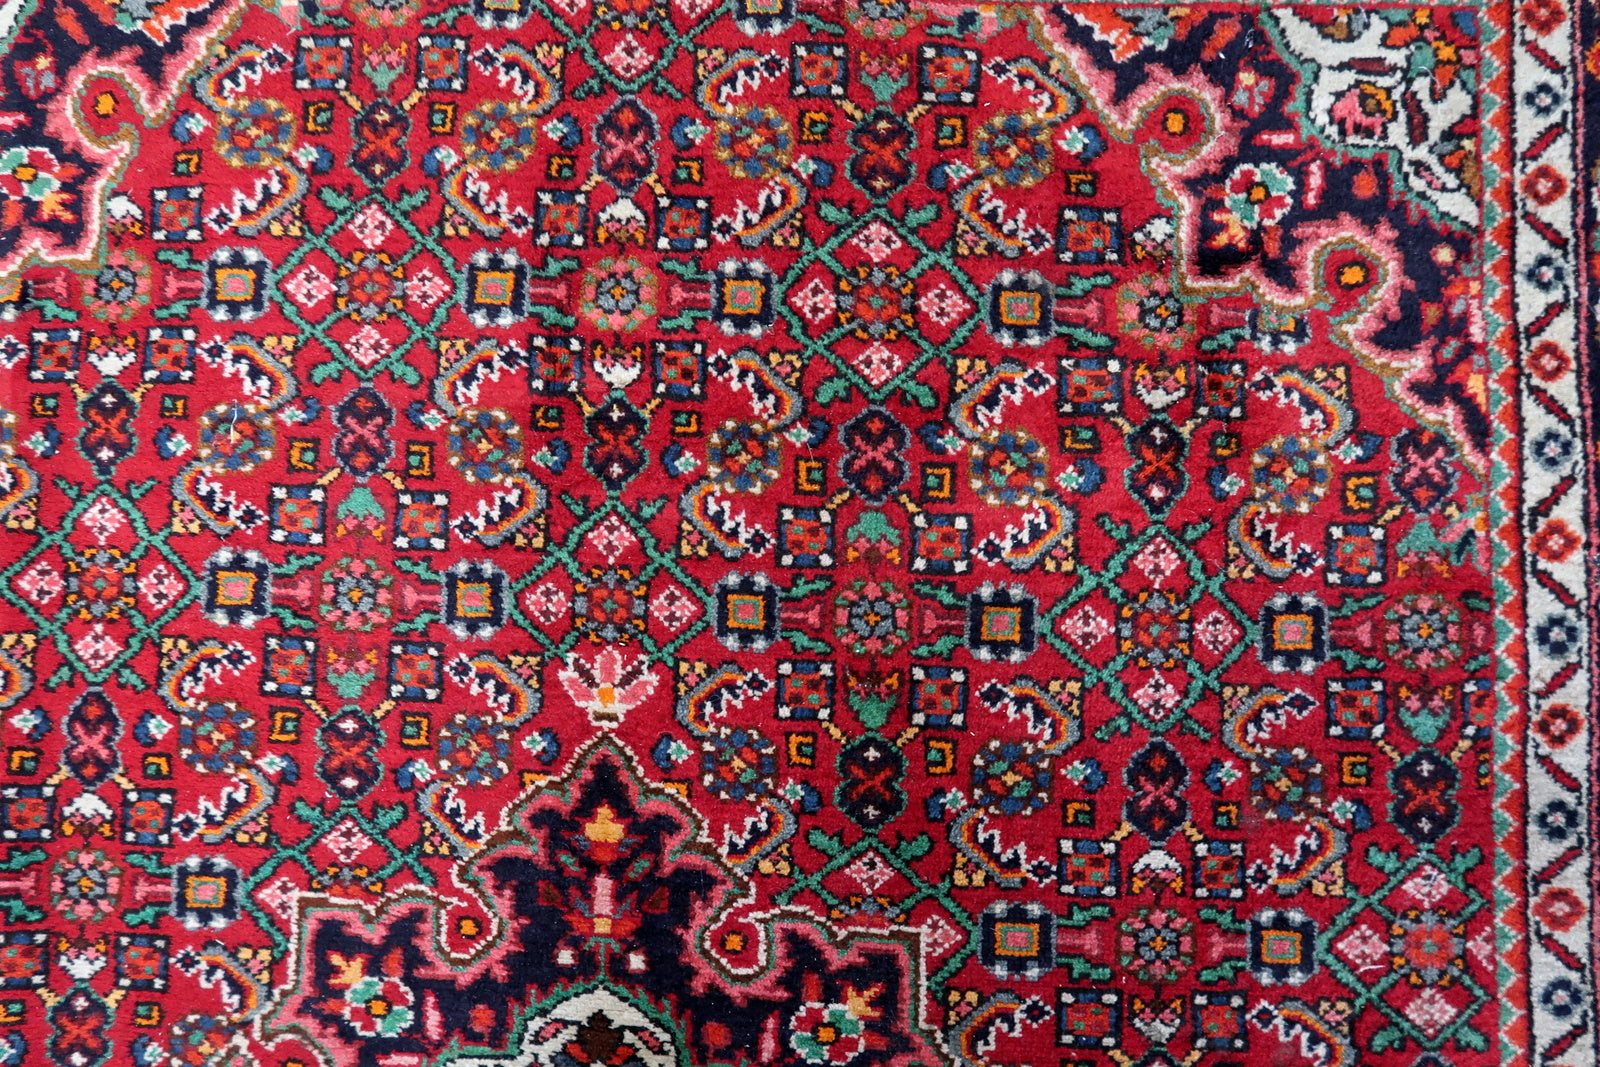 Green Palette Detail - Persian Craftsmanship